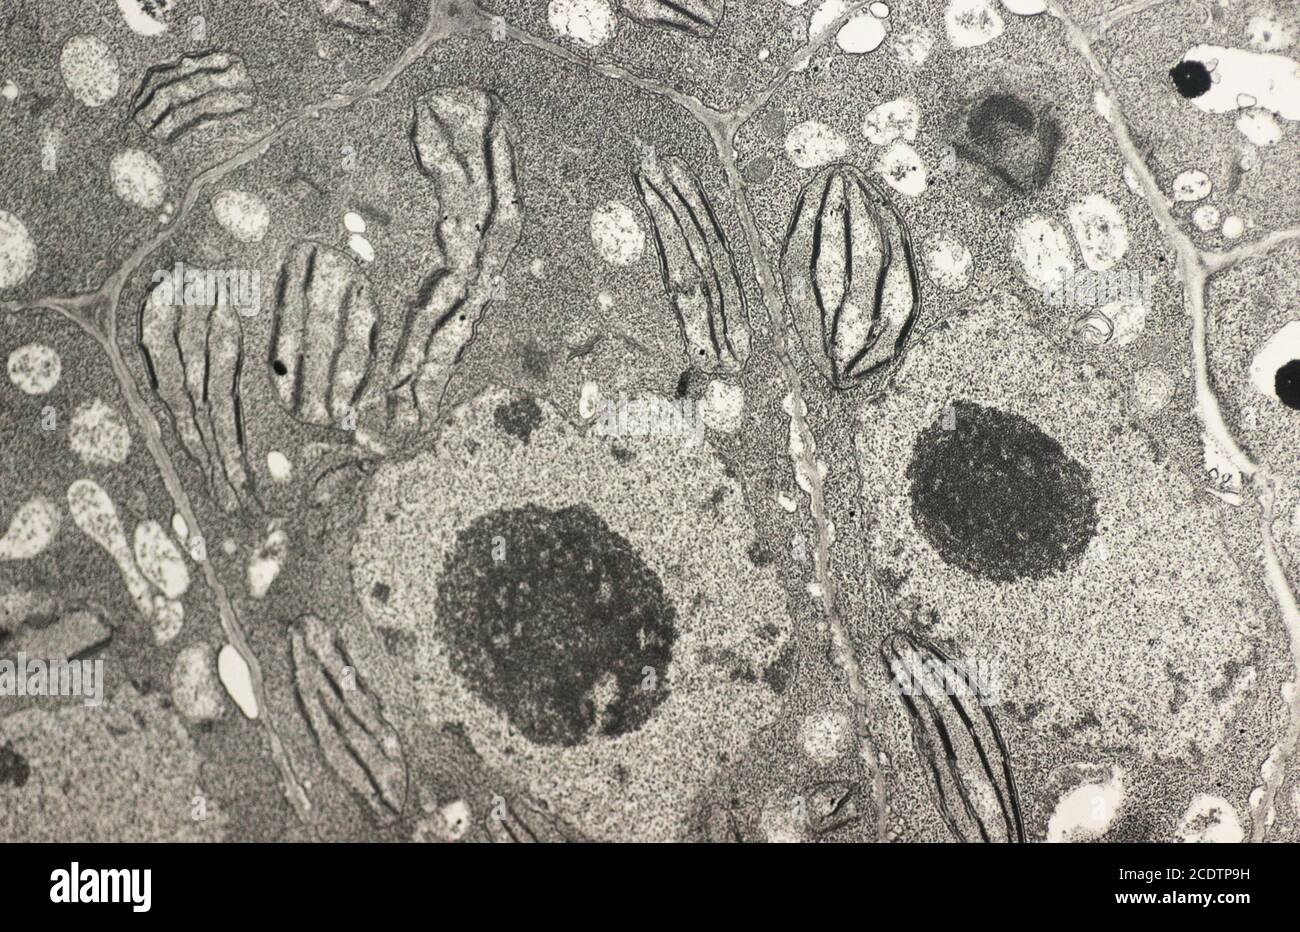 Vegetale Zelle mit Zellkern, Zellwand, Nukleolen, Chloroplast und Stärke. Ein ultradünner Abschnitt von Mesophyll-Zellen mit Chloroplast str Stockfoto